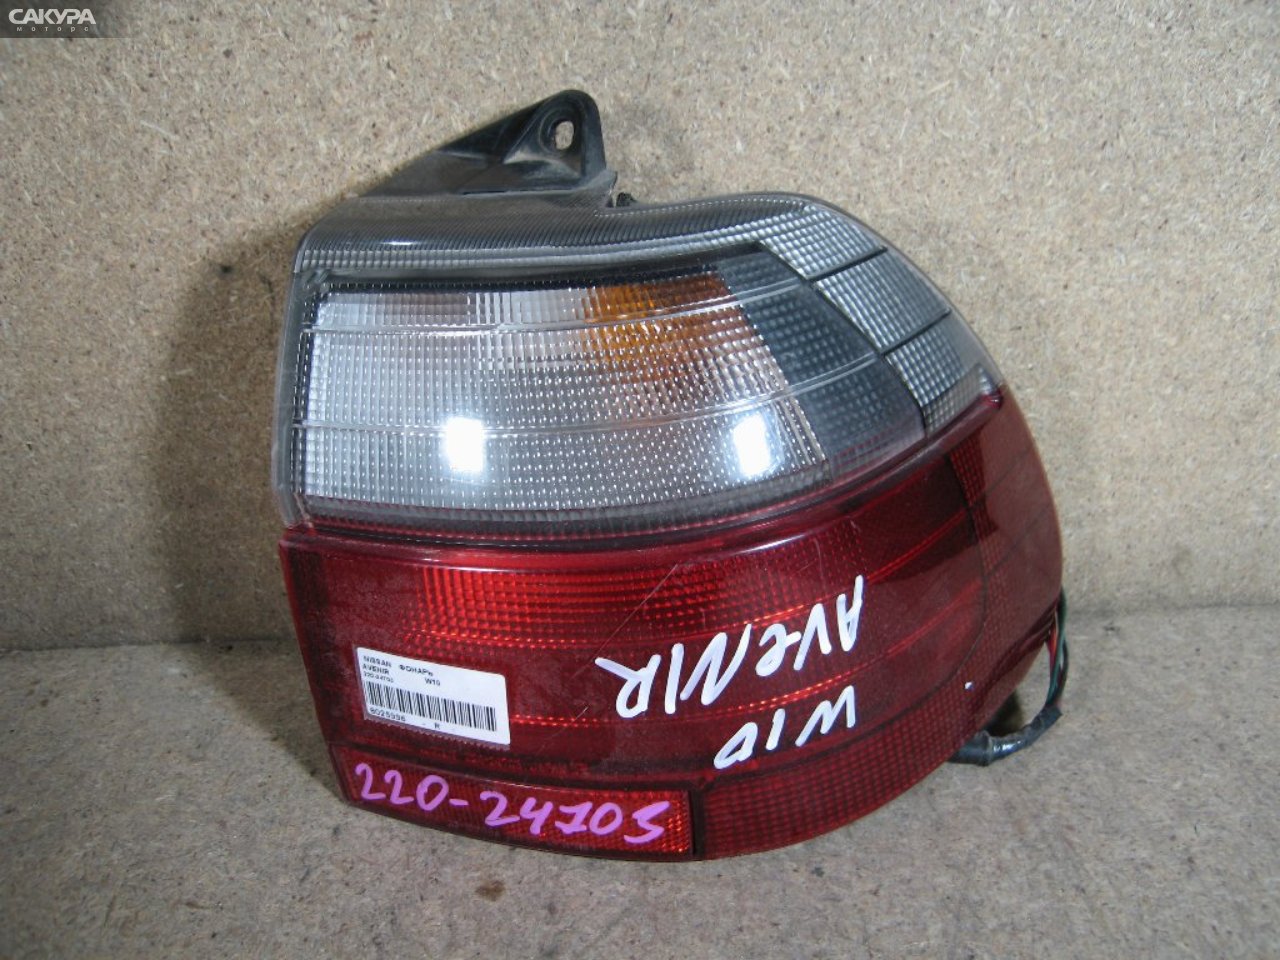 Фонарь стоп-сигнала правый Nissan Avenir W10 220-24703: купить в Сакура Абакан.